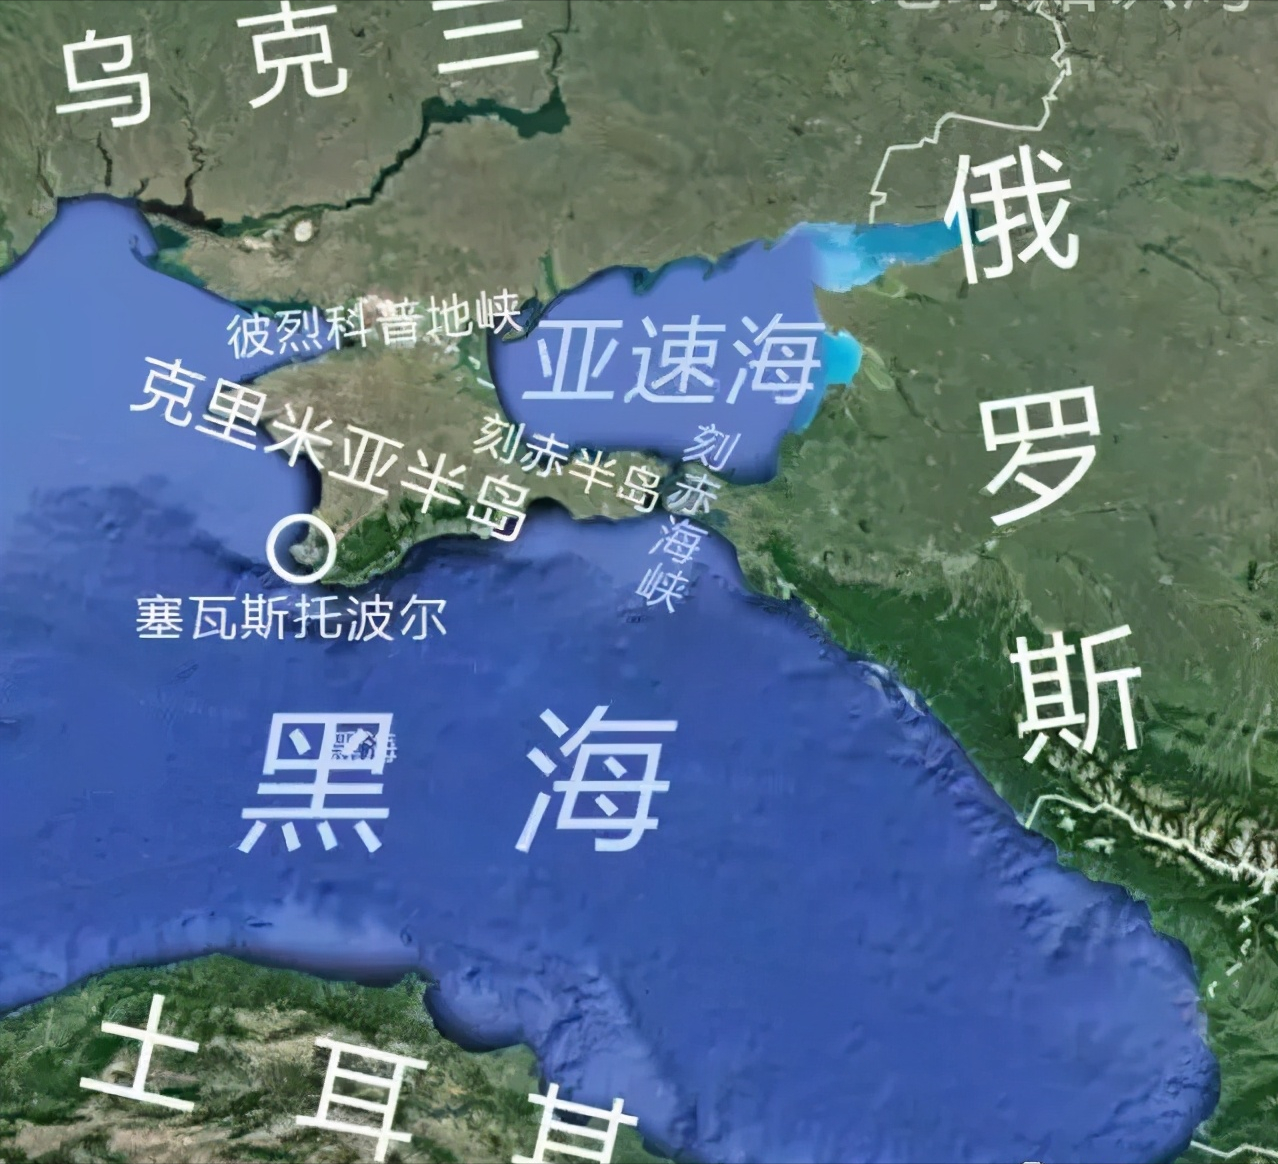 黑海沿岸国家地图图片